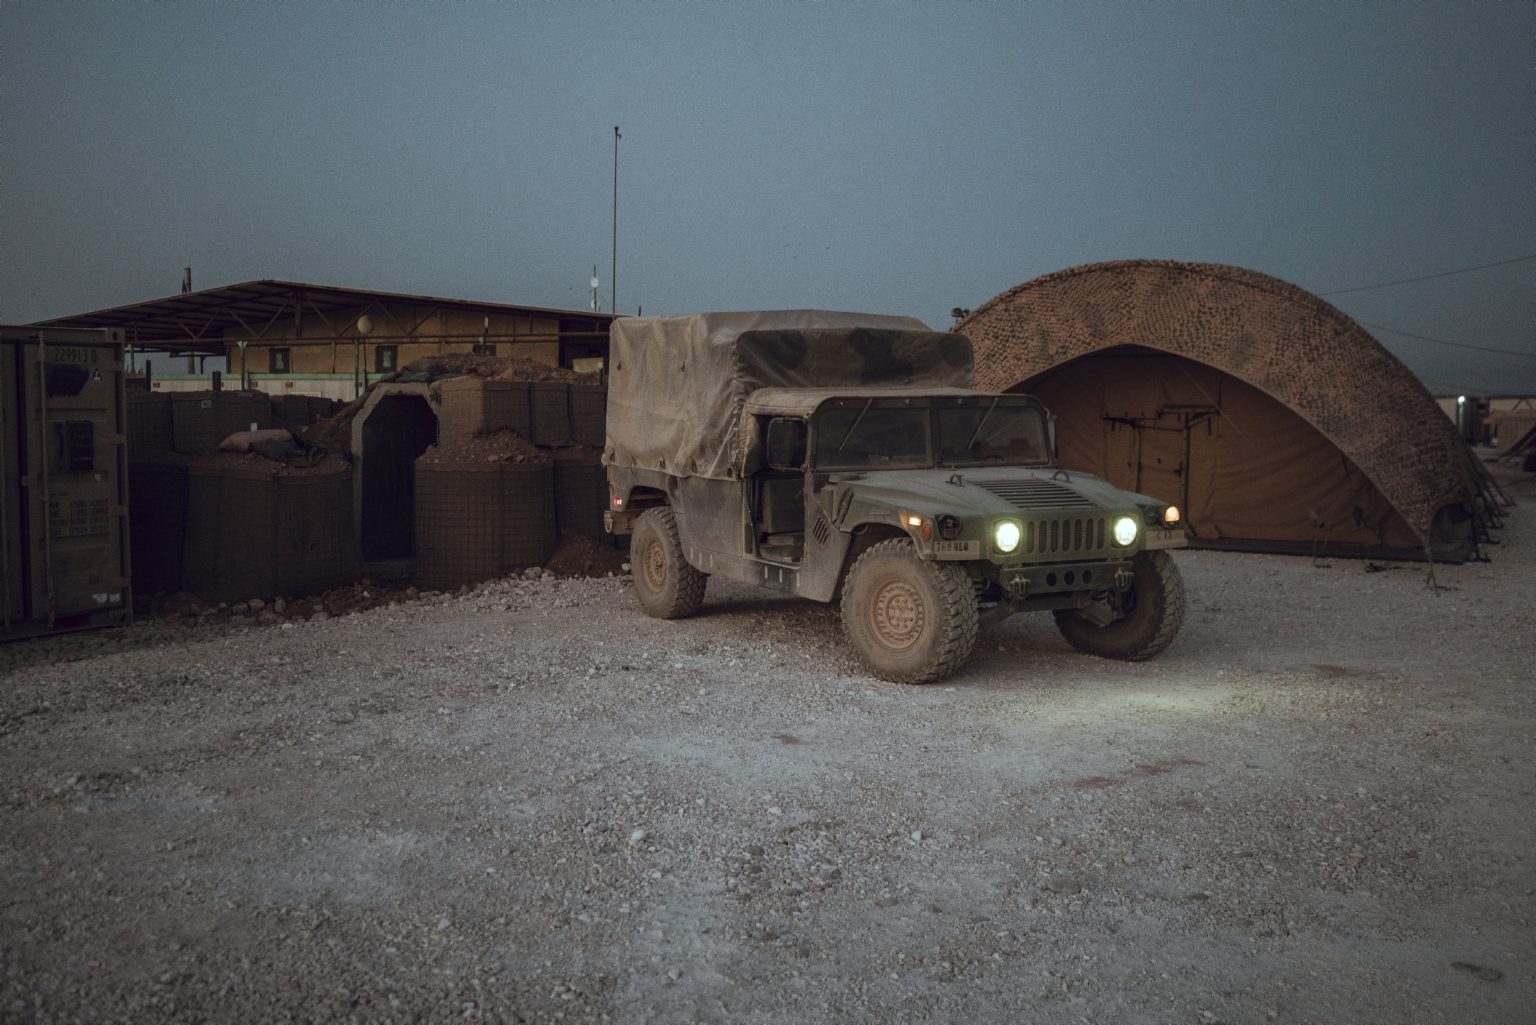 SYRIA. August 26, 2021 - A U.S. Army vehicle in a remote U.S. Army combat outpost in northeastern Syria, known as RLZ.

SIRIA. 26 agosto 2021 - Un veicolo dell'esercito americano in un avamposto dell'esercito americano nel nord-est della Siria, noto come RLZ.